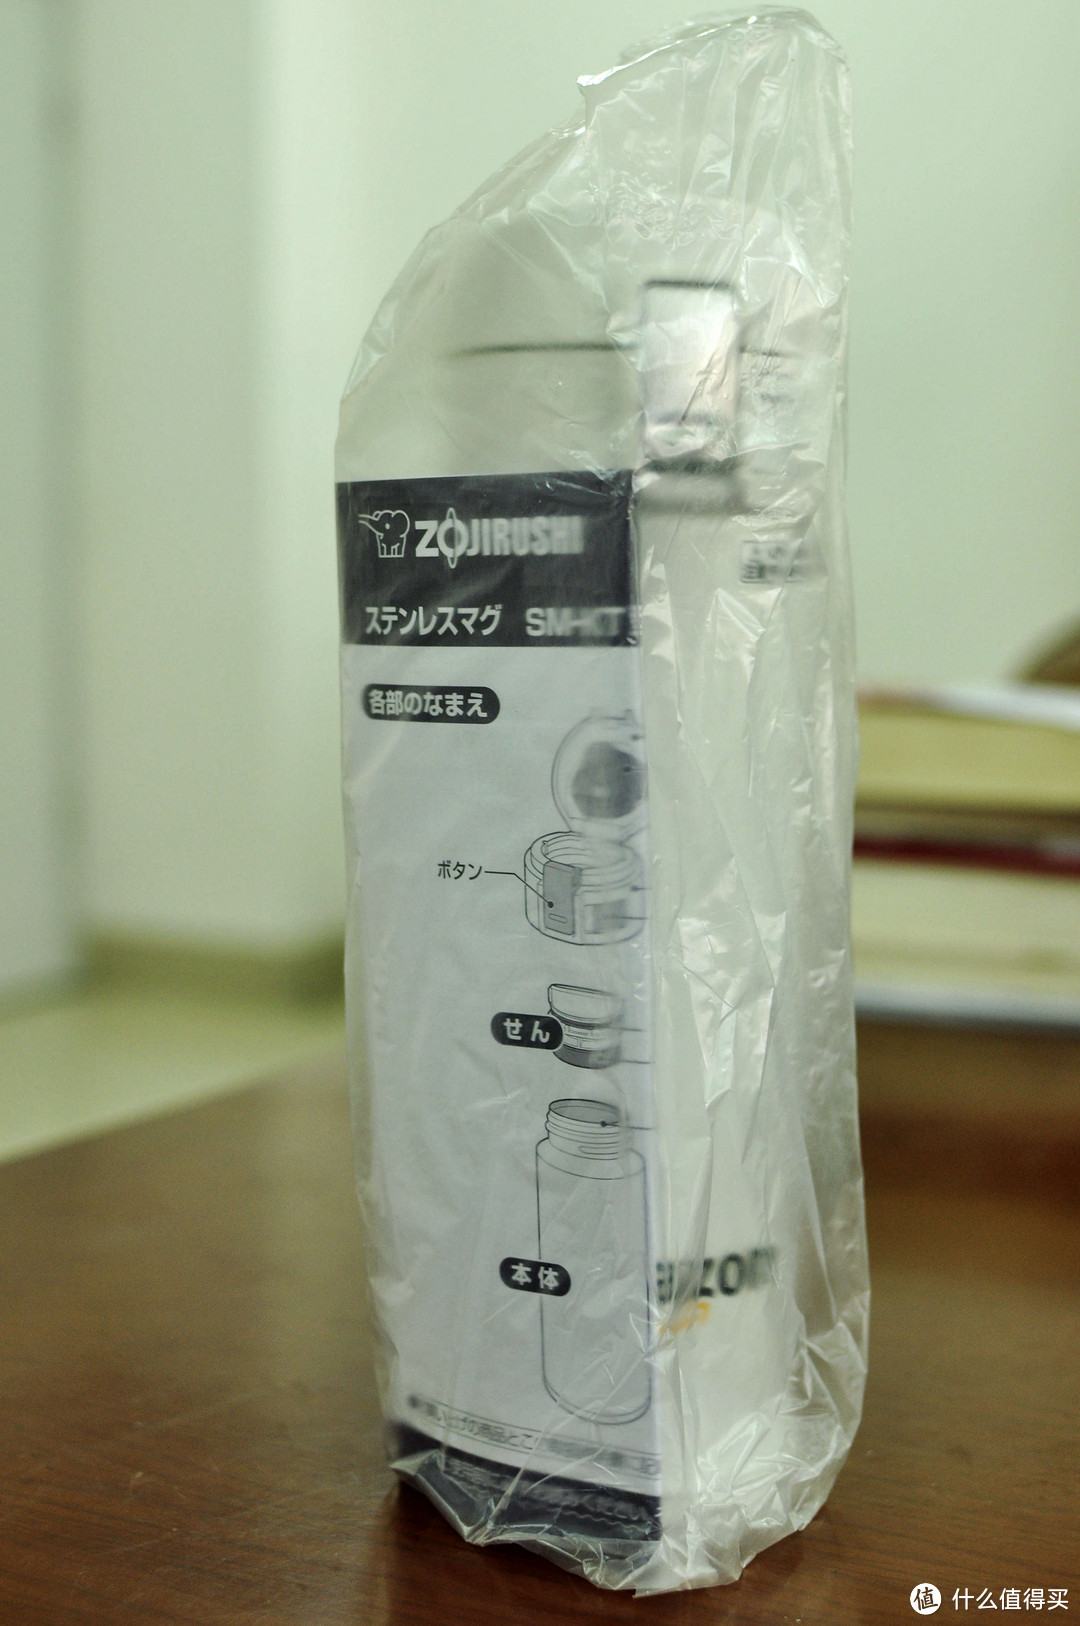 日淘第一单：ZOJIRUSHI 象印 SM-KT48AZ  日亚限定款 保温杯 480ml 开箱测评（内含保温对比测试）